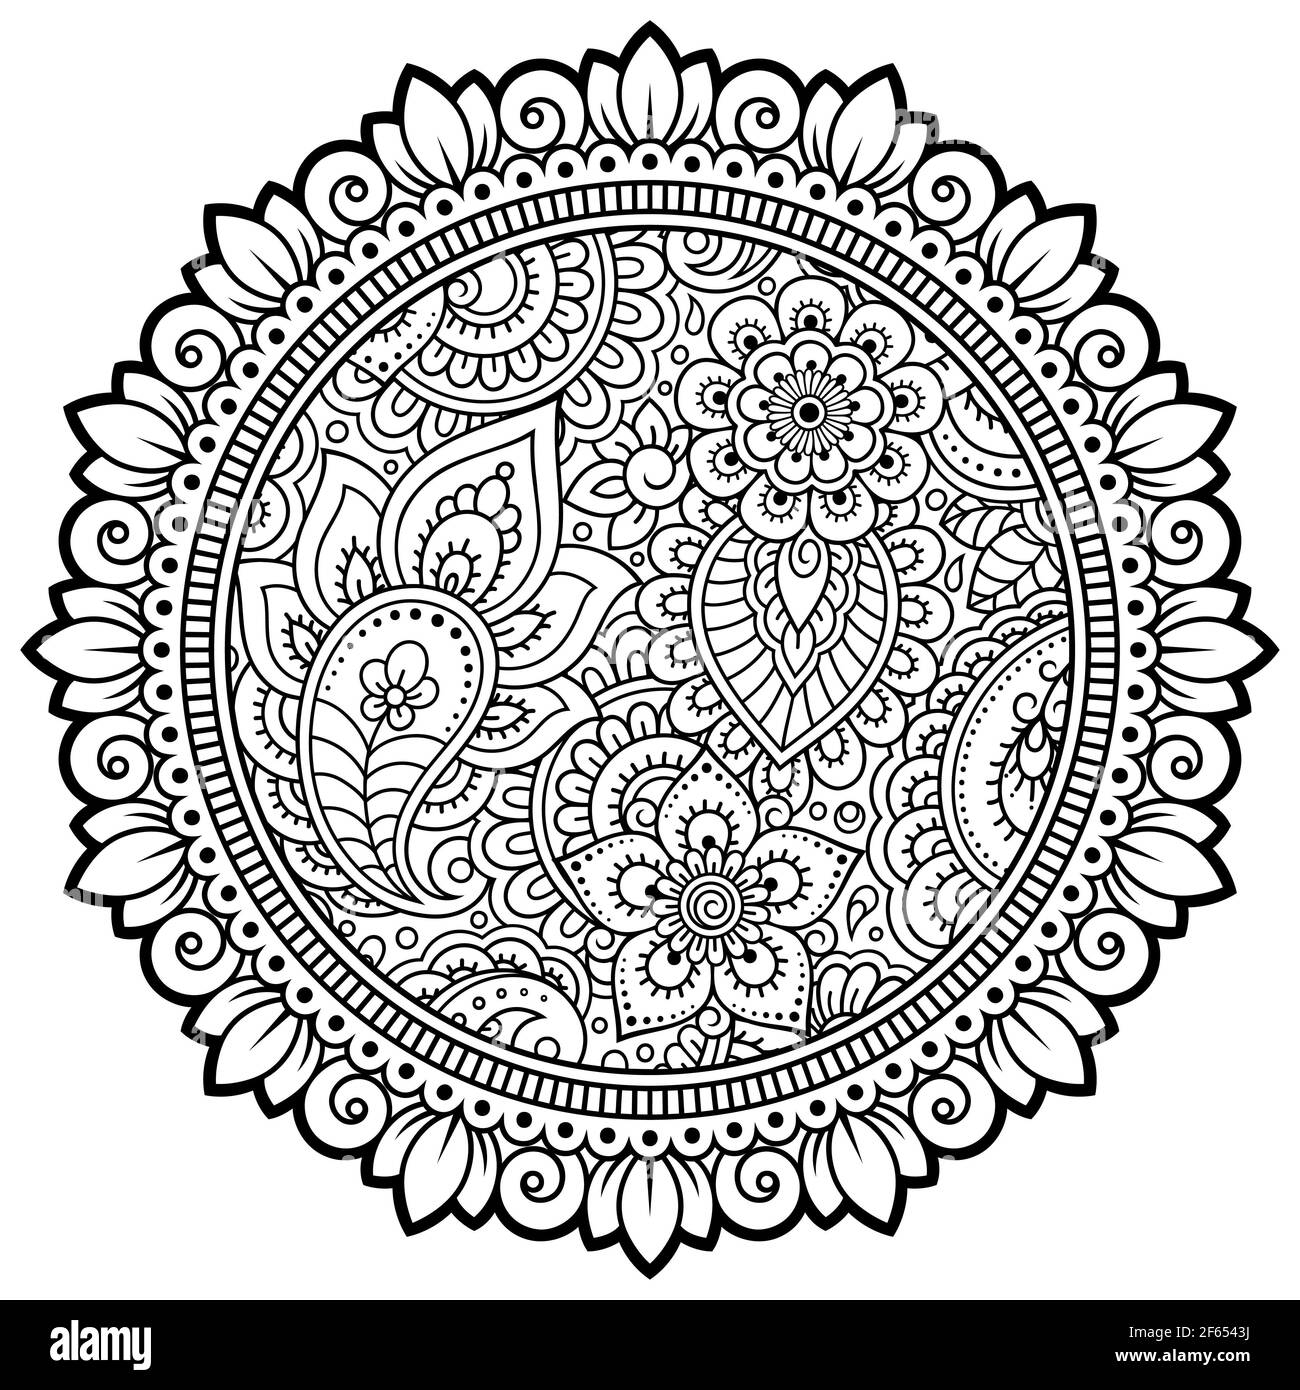 Motif circulaire sous forme de mandala avec fleur pour Henna, Mehndi, tatouage, décoration. Décoration décorative de style oriental ethnique. Contours dooodle ha Banque D'Images